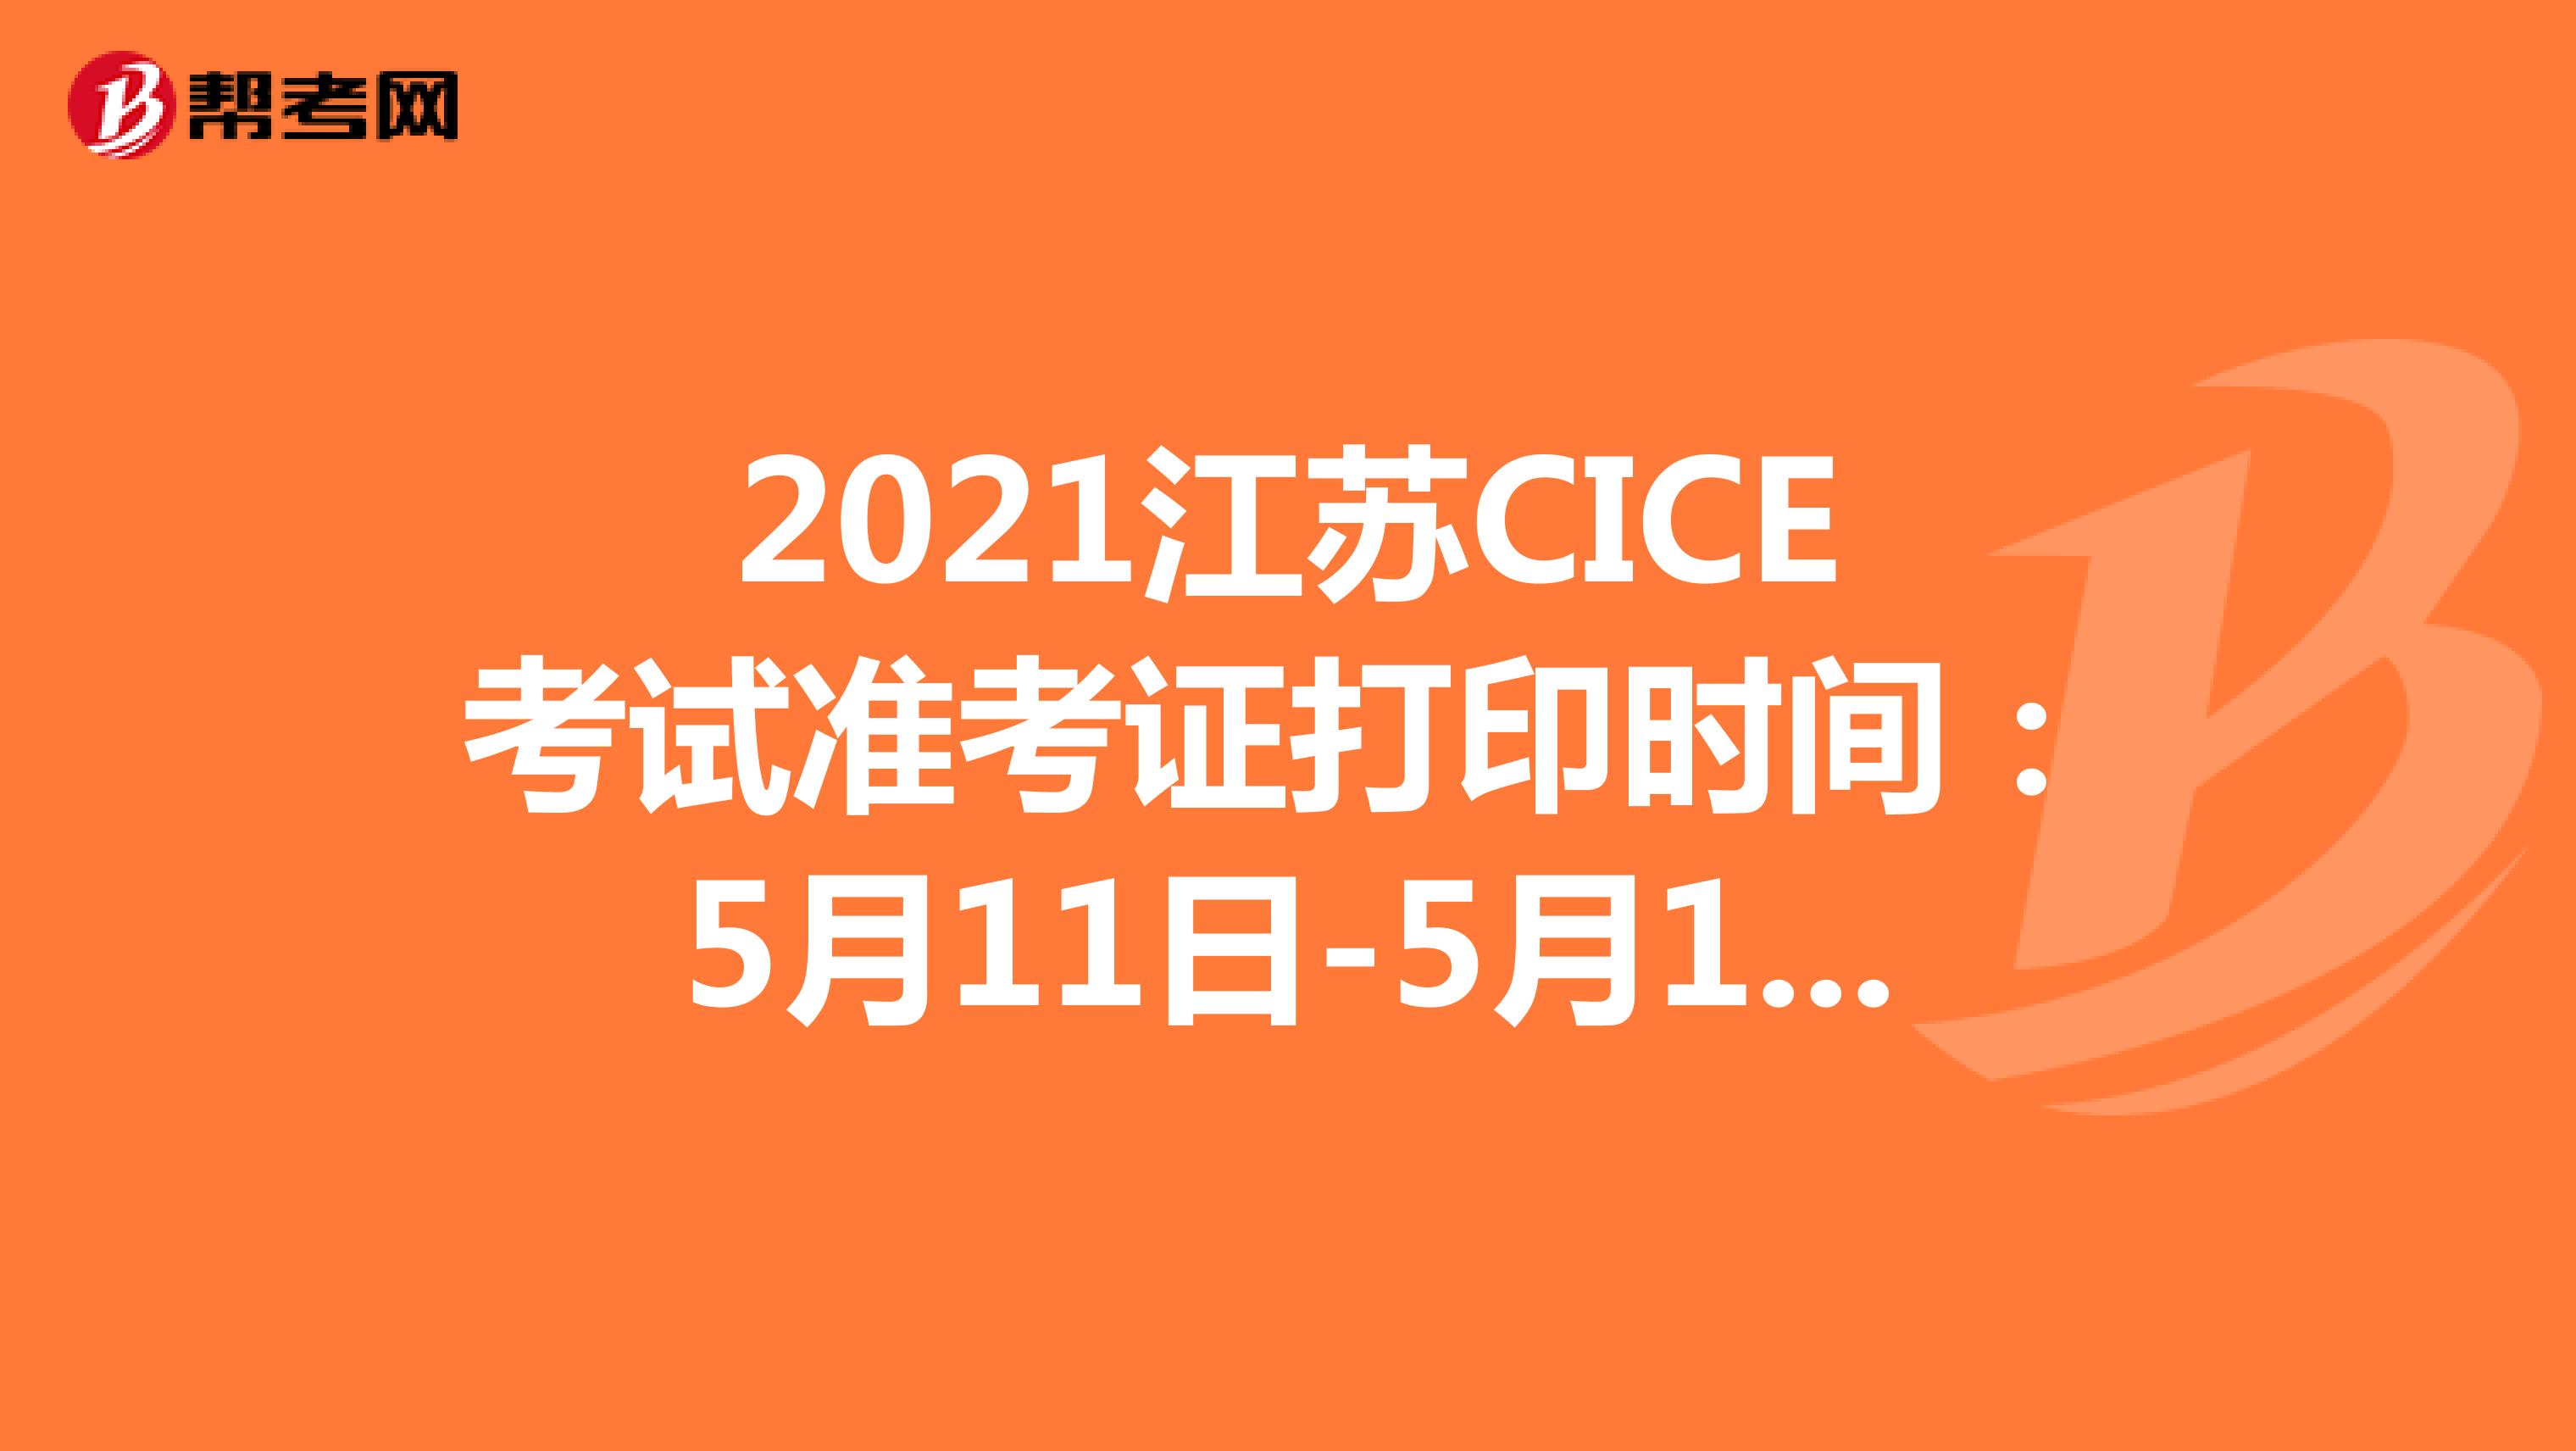 2021江苏CICE考试准考证打印时间：5月11日-5月14日